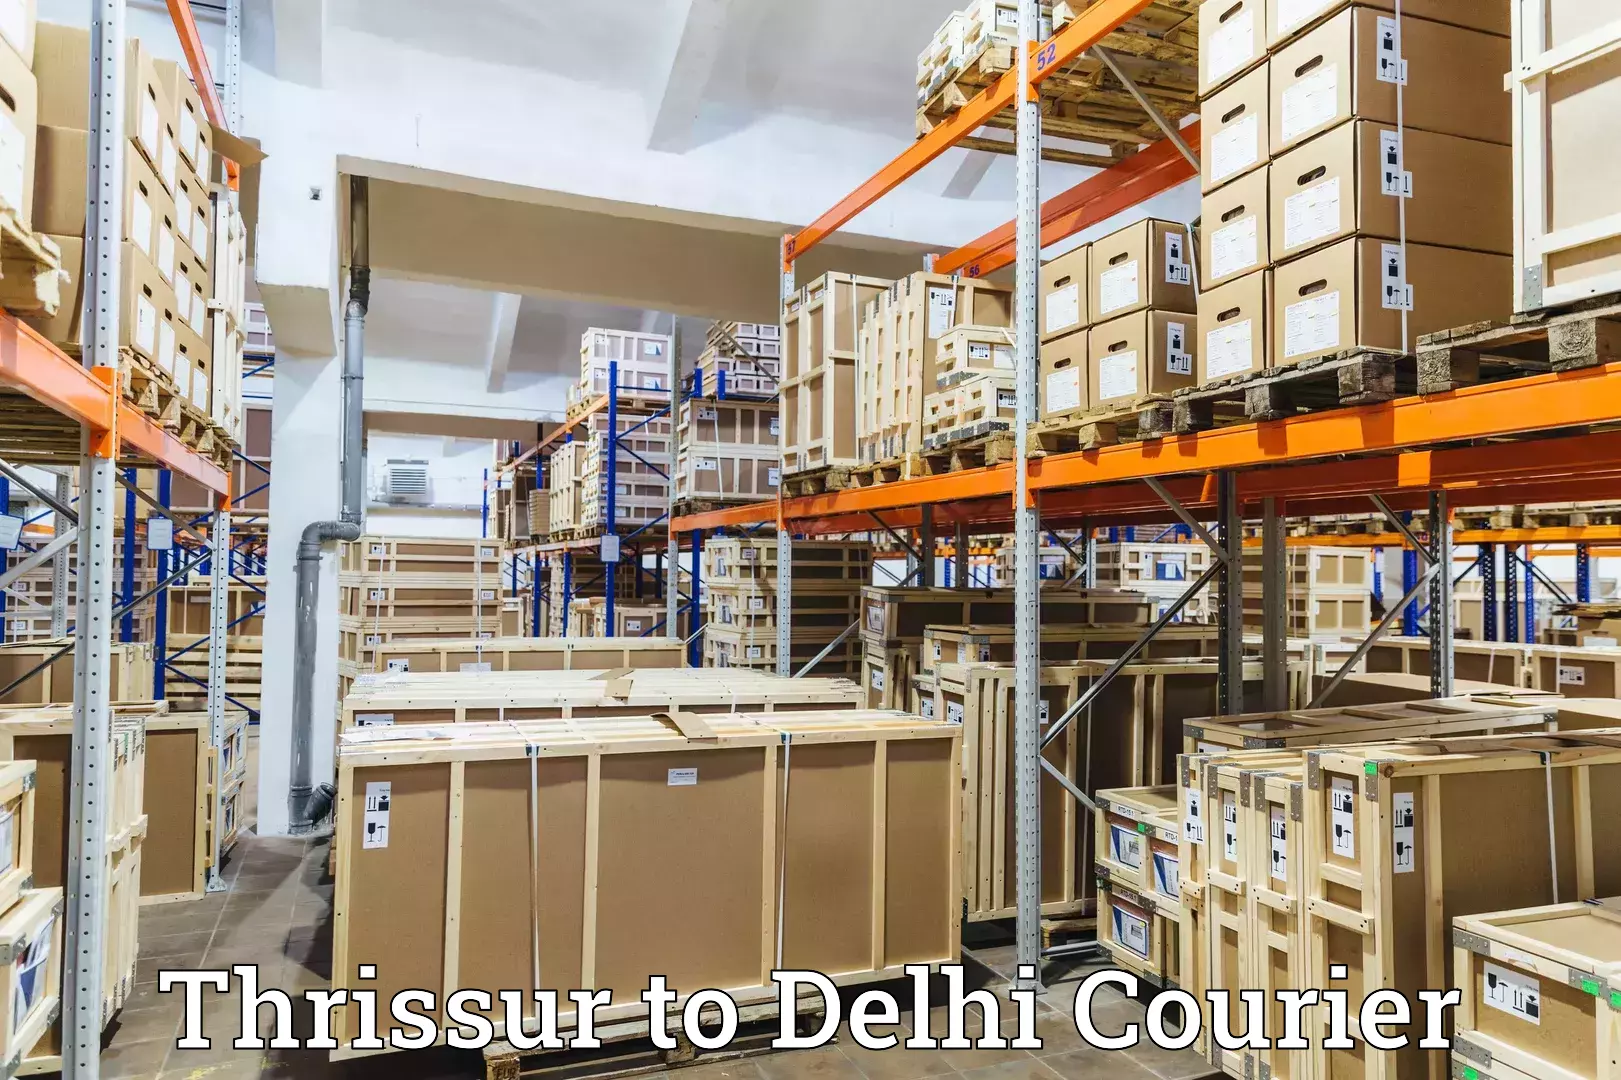 Reliable parcel services Thrissur to Jamia Millia Islamia New Delhi